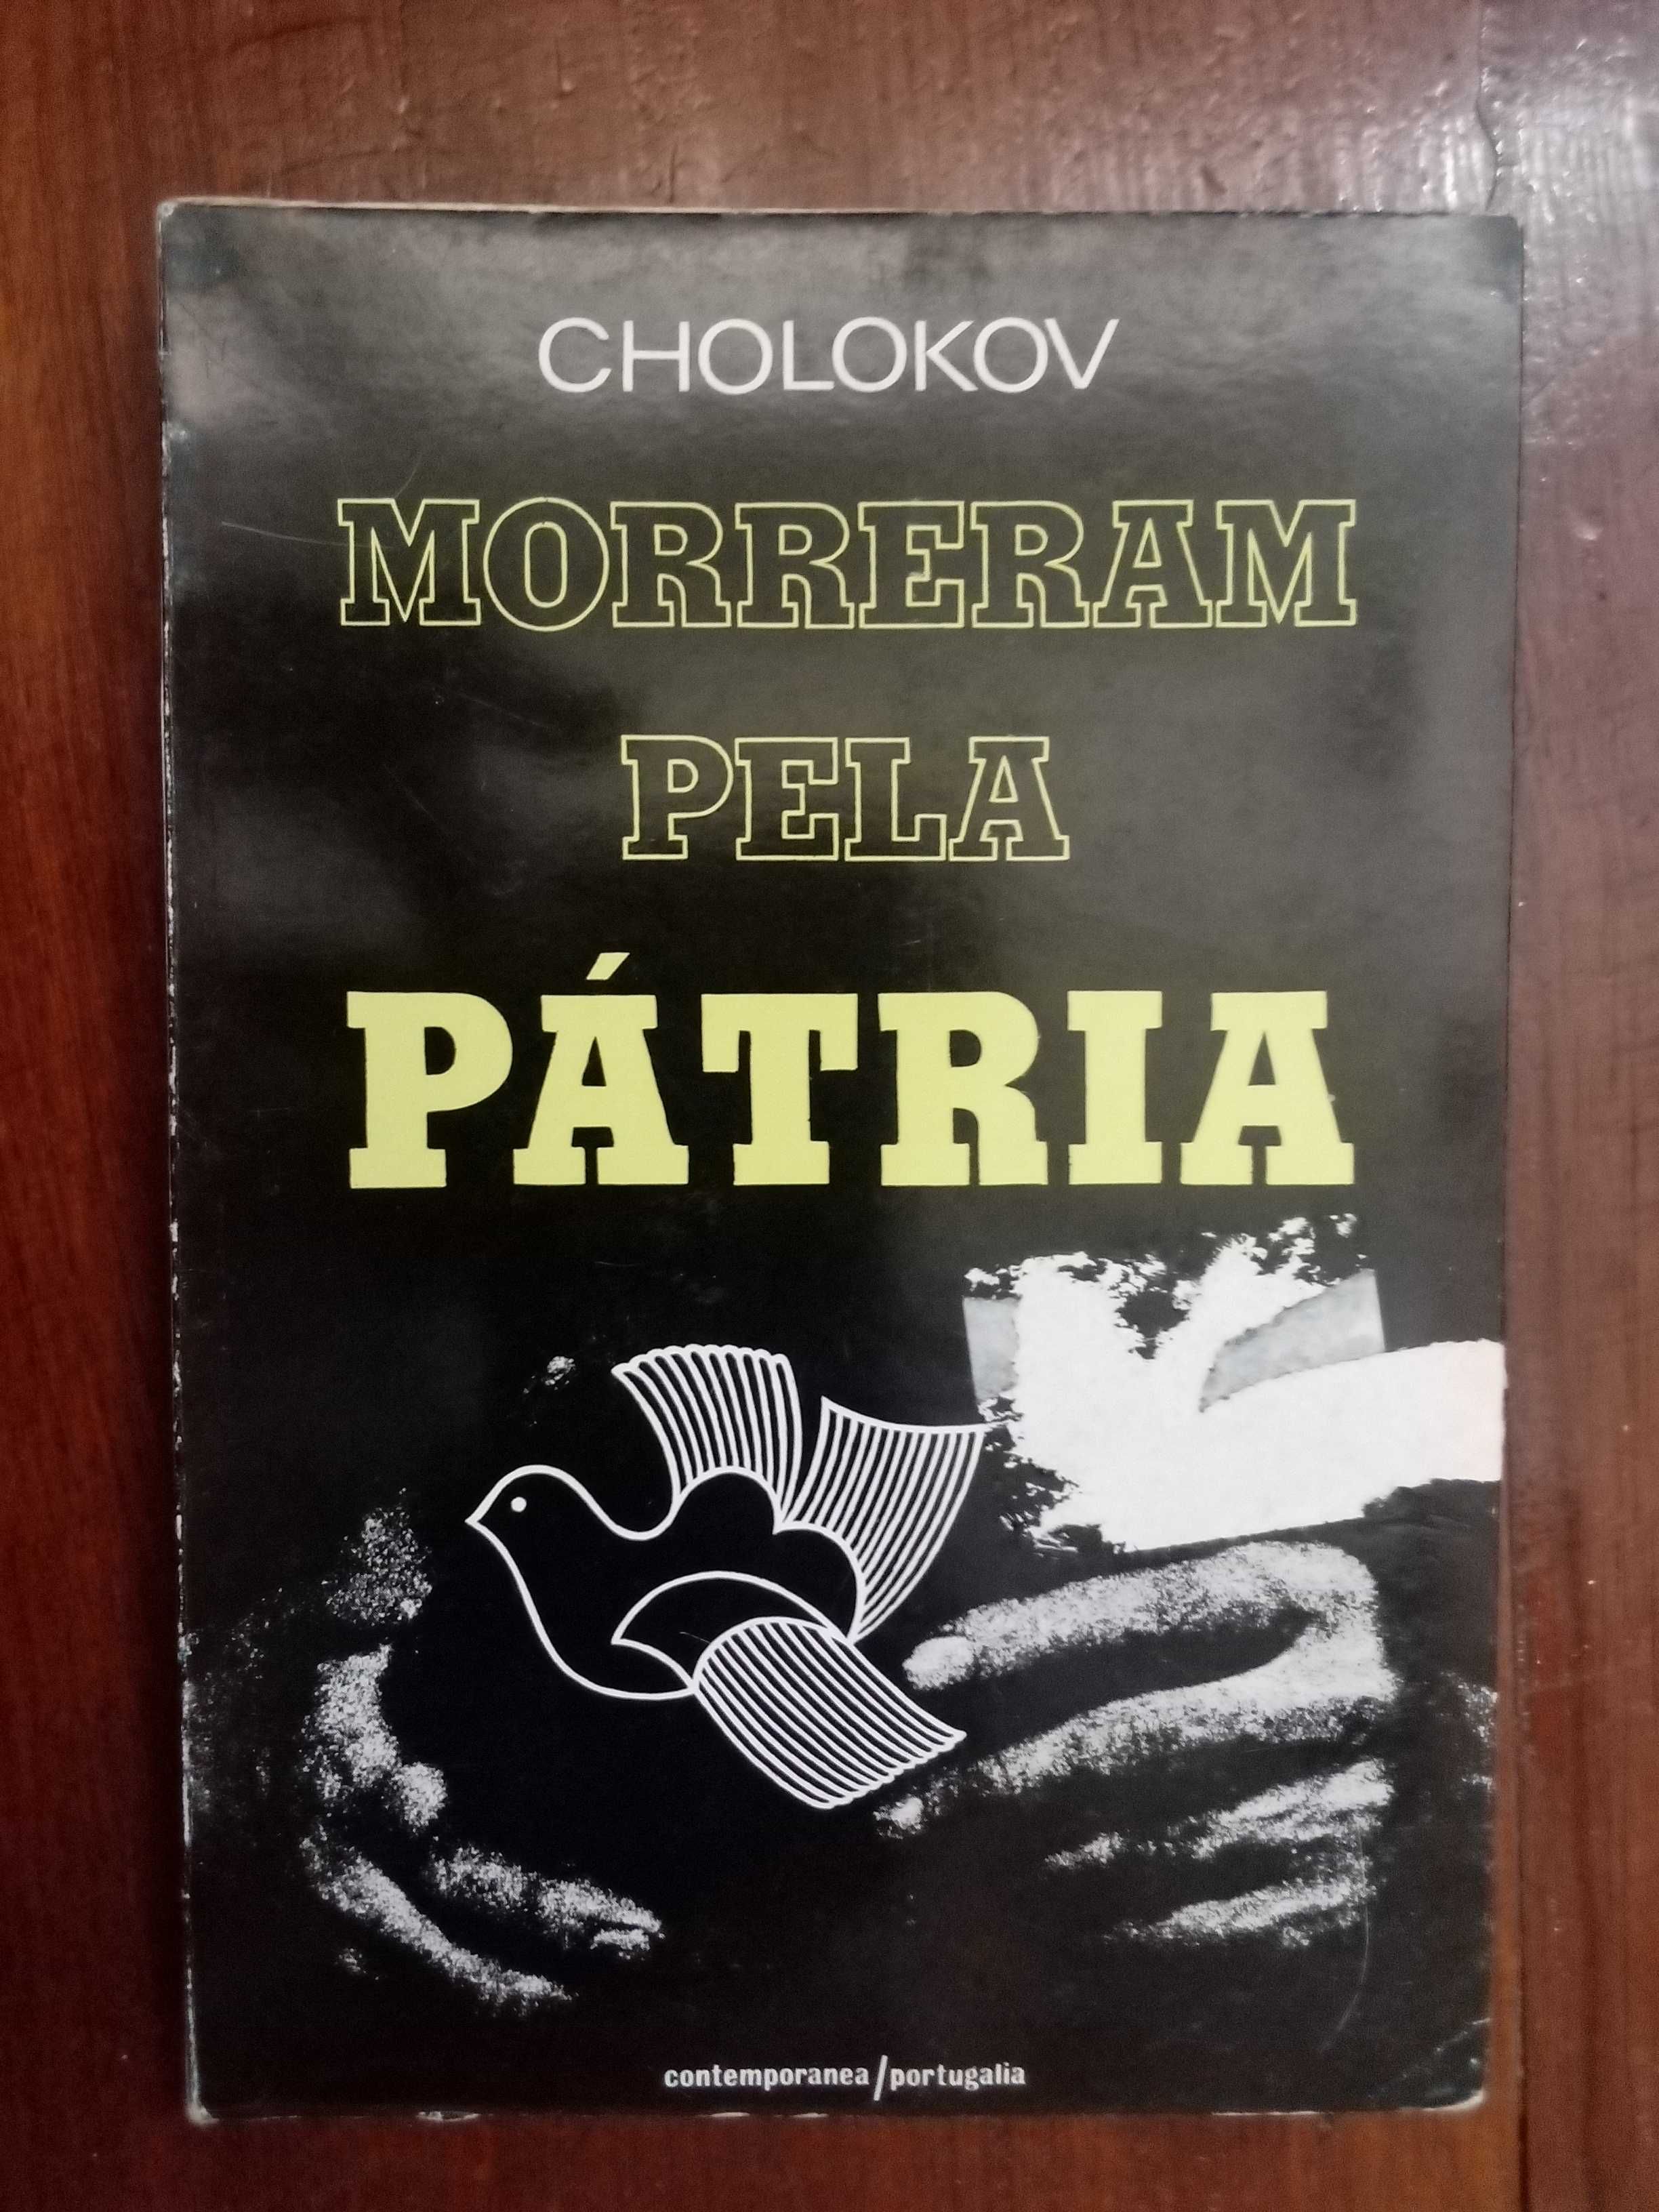 Cholokov - Morreram pela pátria